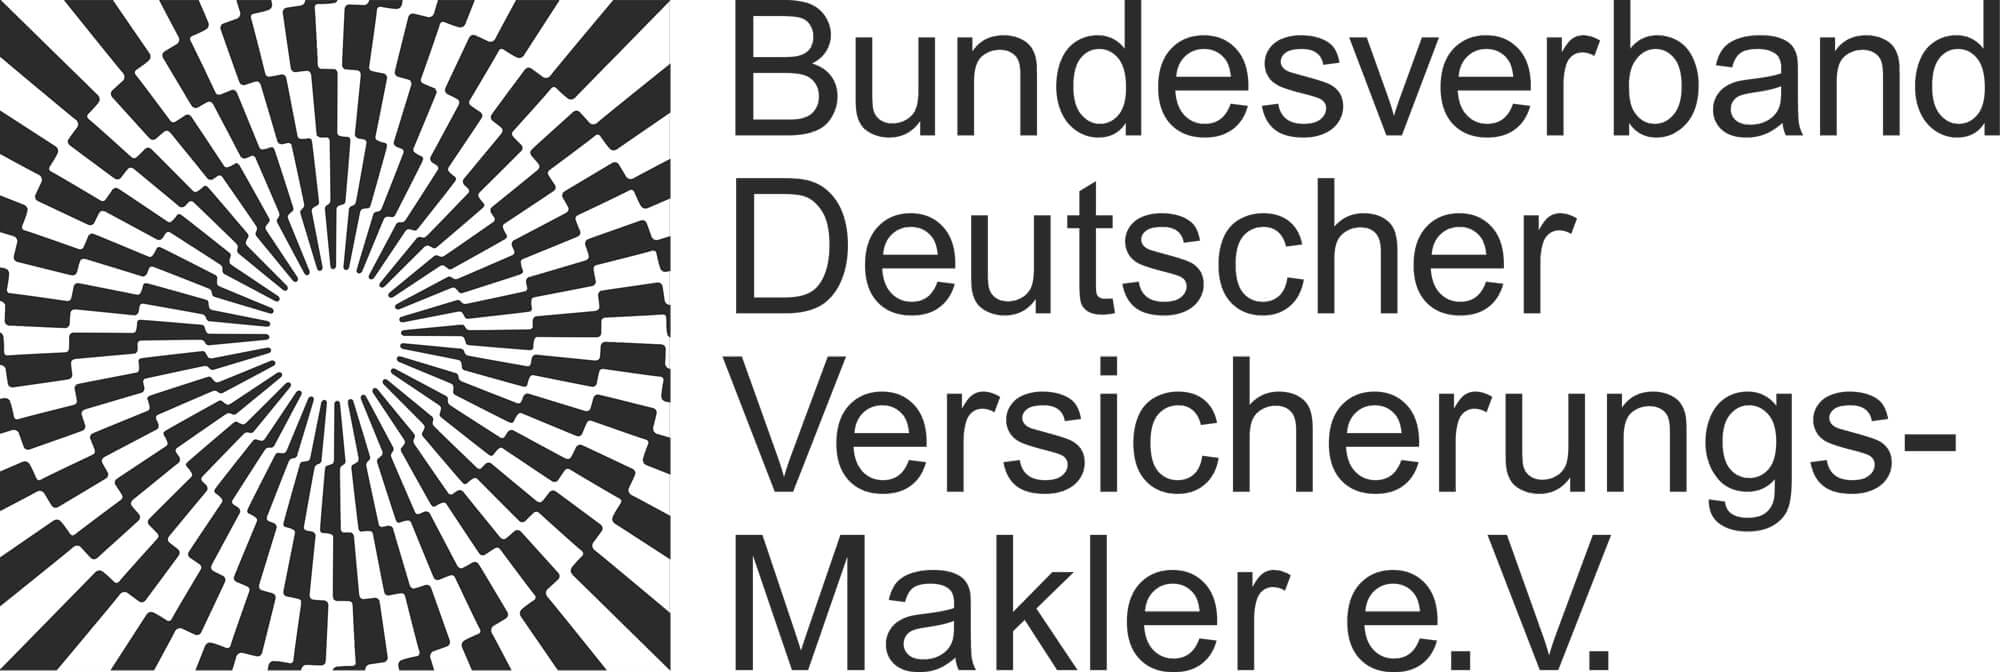 Mitglied im Bundesverband deutscher versicherungsmakler